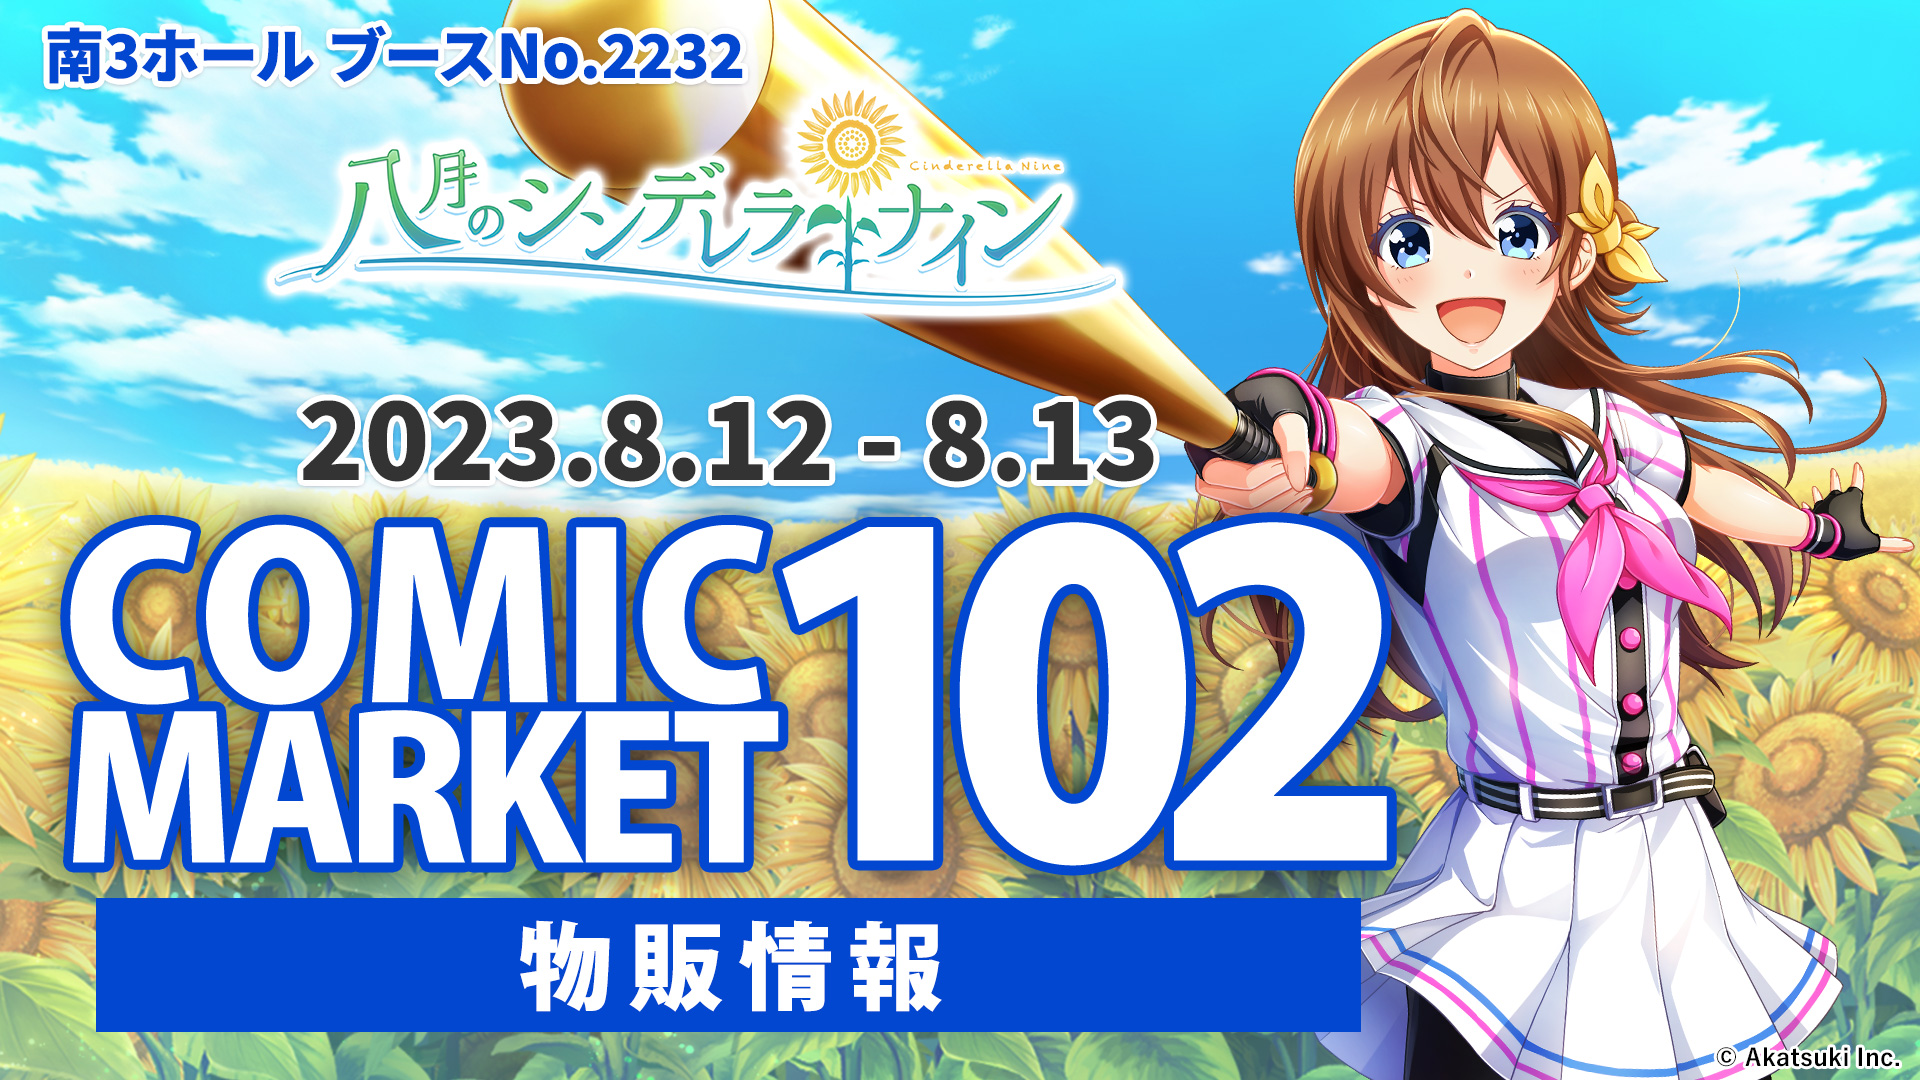 コミックマーケット102 【物販情報】 | 八月のシンデレラナイン 